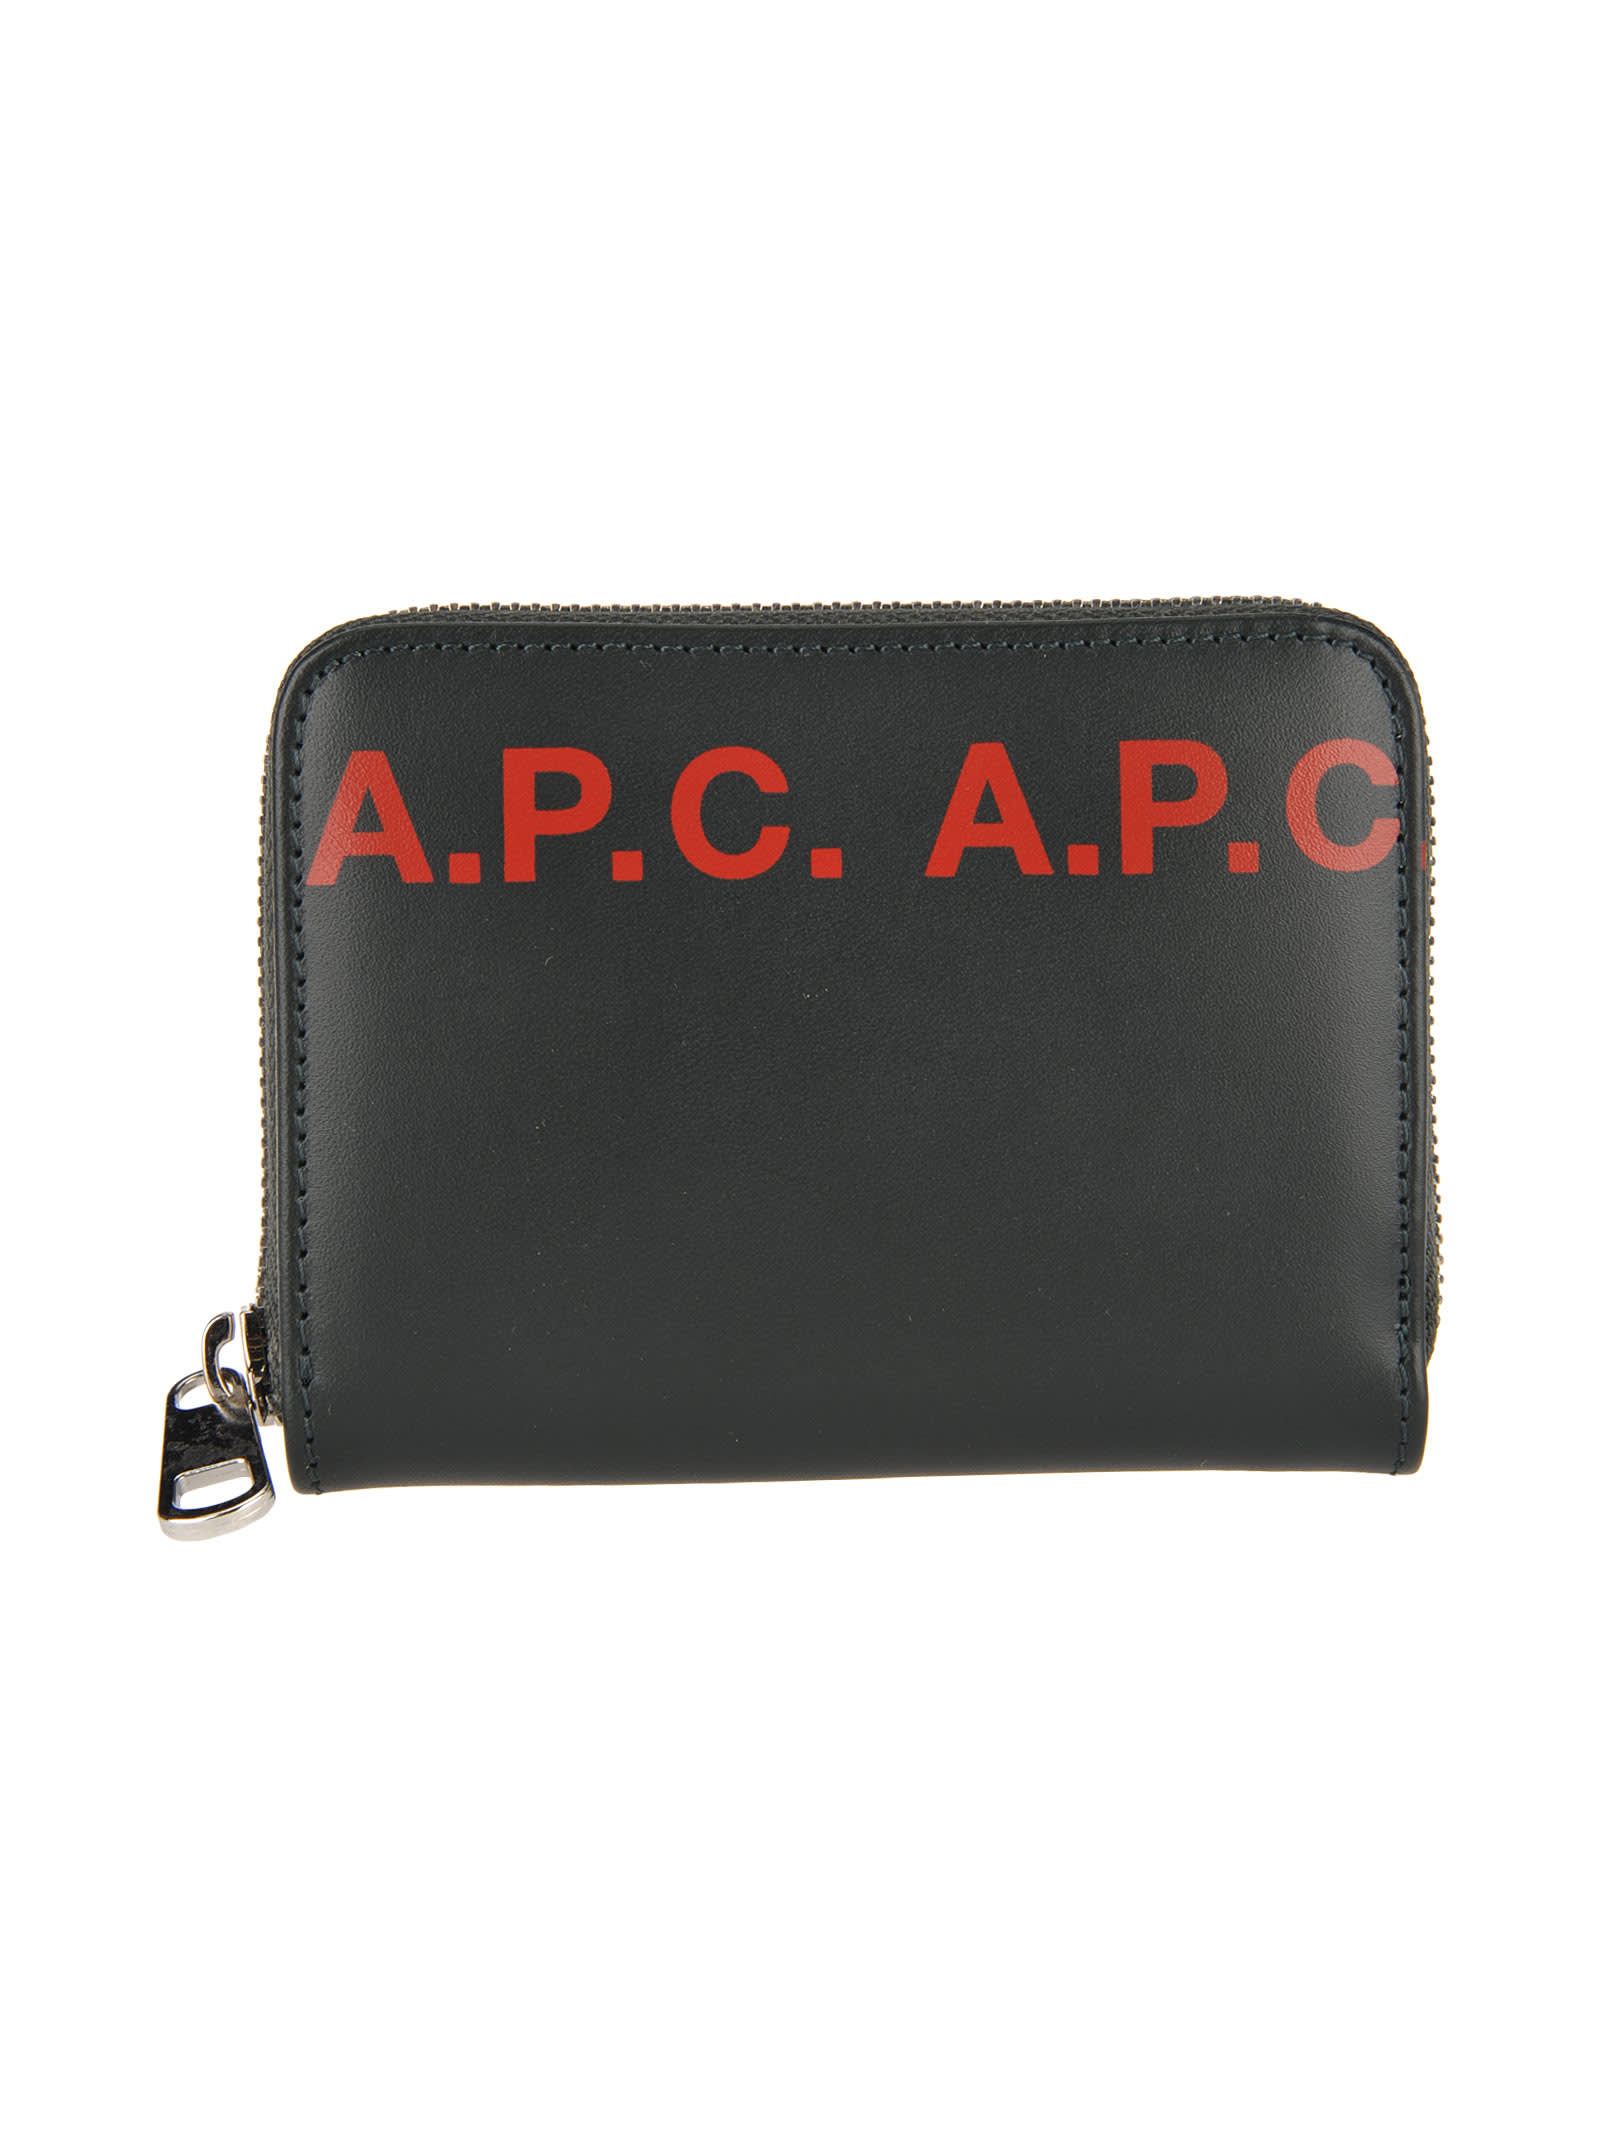 APC A.p.c. Dallas Logo Wallet,11048133